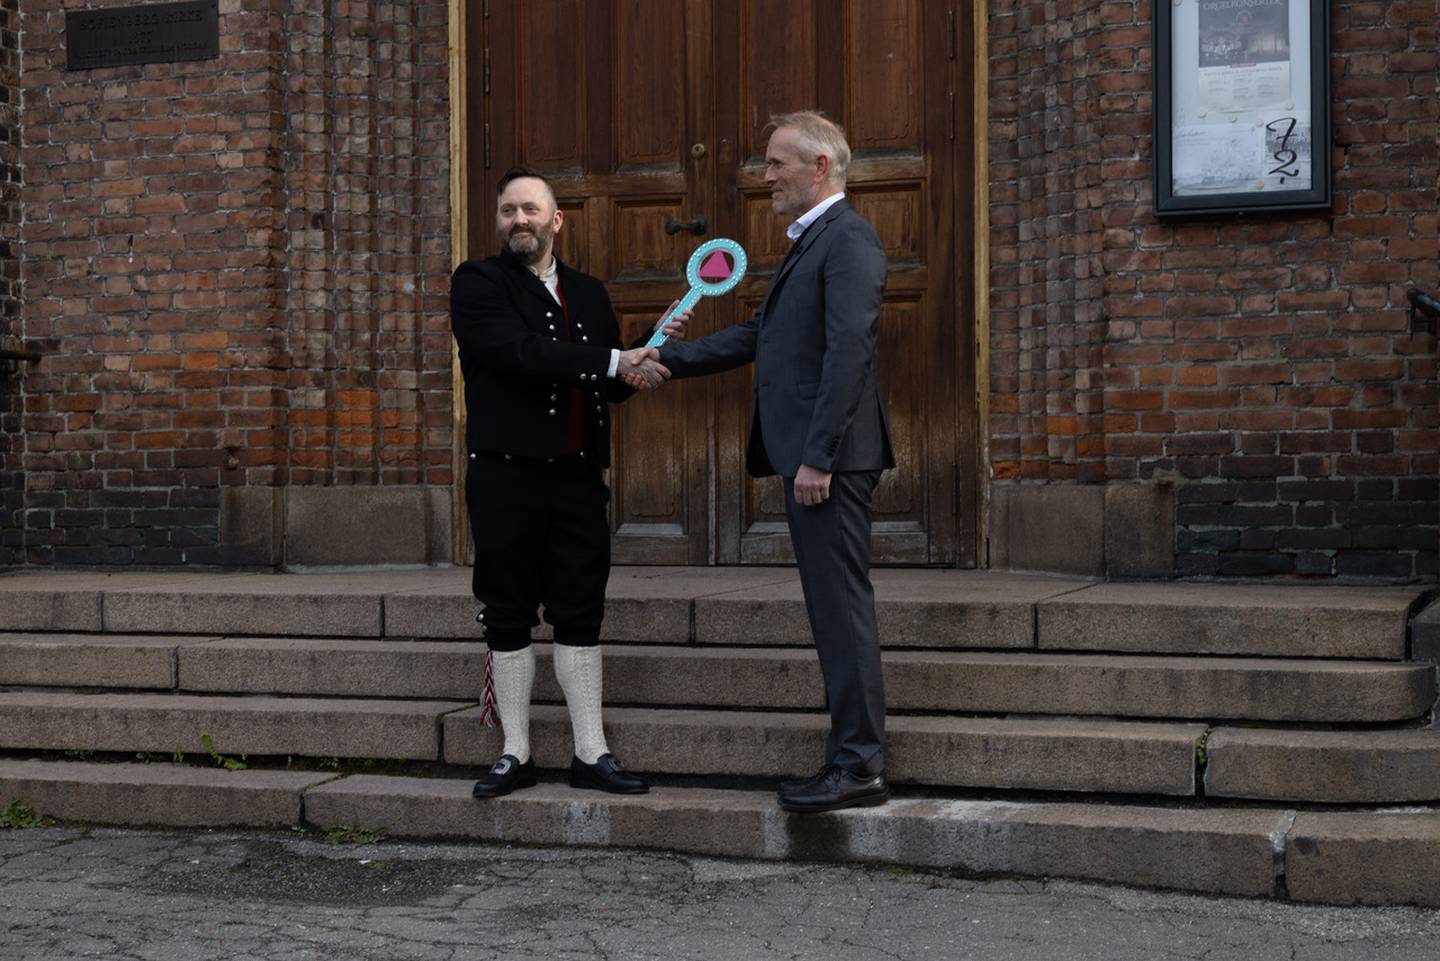 Skeivt kunst- og kultursenter åpner i Sofienberg kirke i Oslo, 26. april 2023. 

Her: Marius Hofstad, styreleder i SKOKS, tar imot nøkkelen fra kirkeverge Kjetil Haga